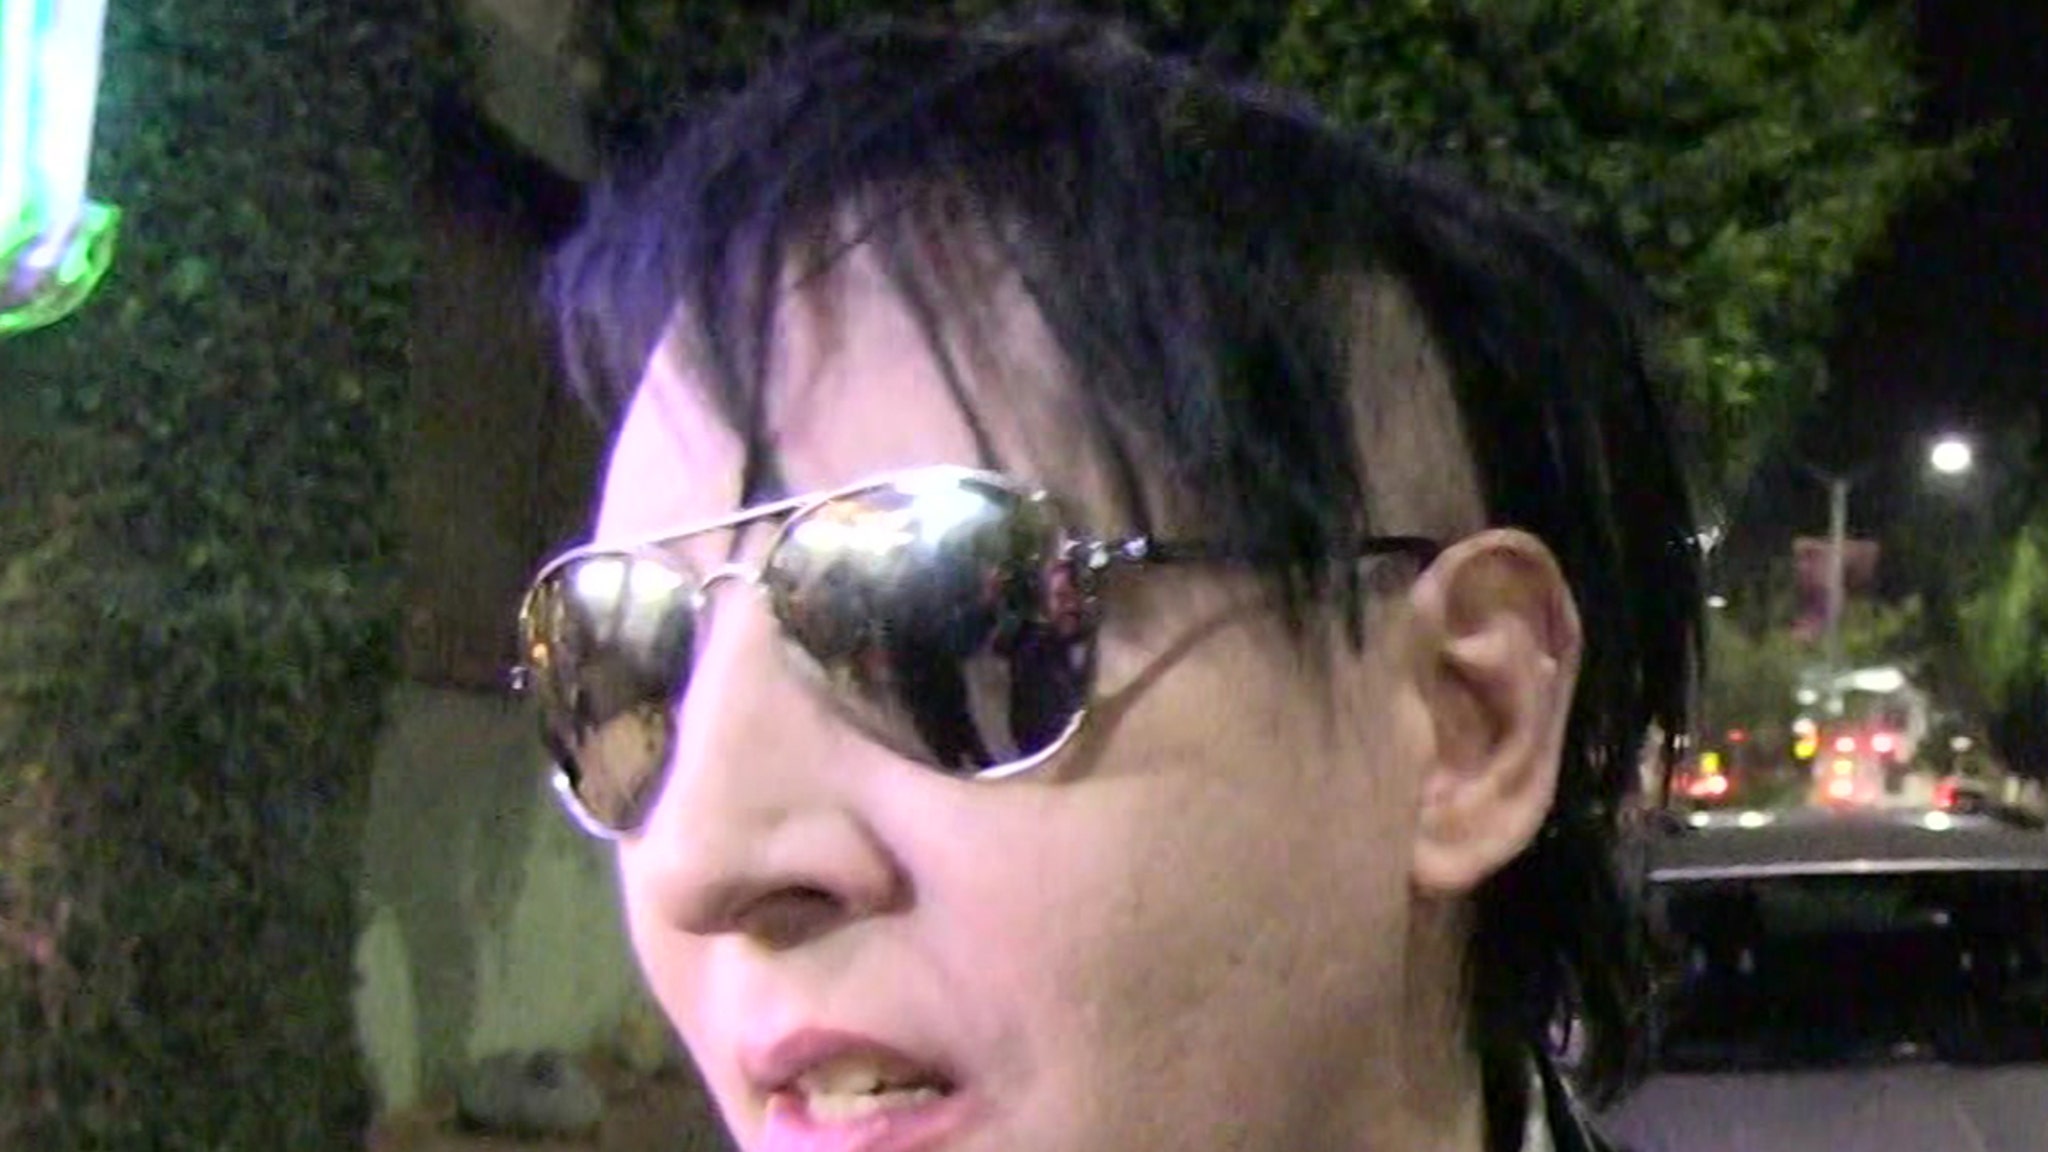 L’affaire d’agression sexuelle de Marilyn Manson n’entraînera probablement pas d’accusations